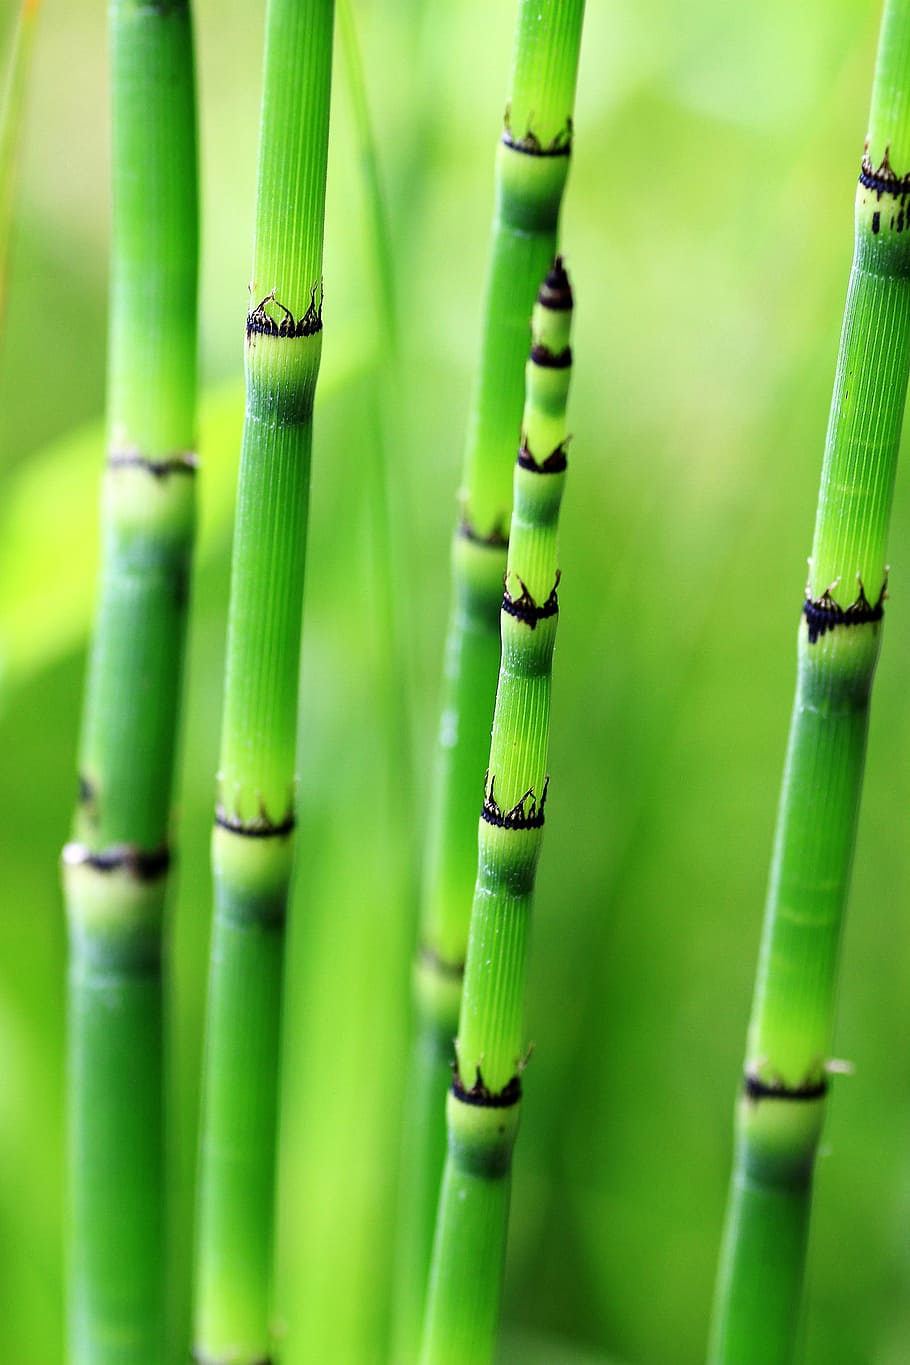 seletiva, foco, verde, planta, hastes, bambu, natureza, varas de bambu, árvores de bambu, cana de bambu